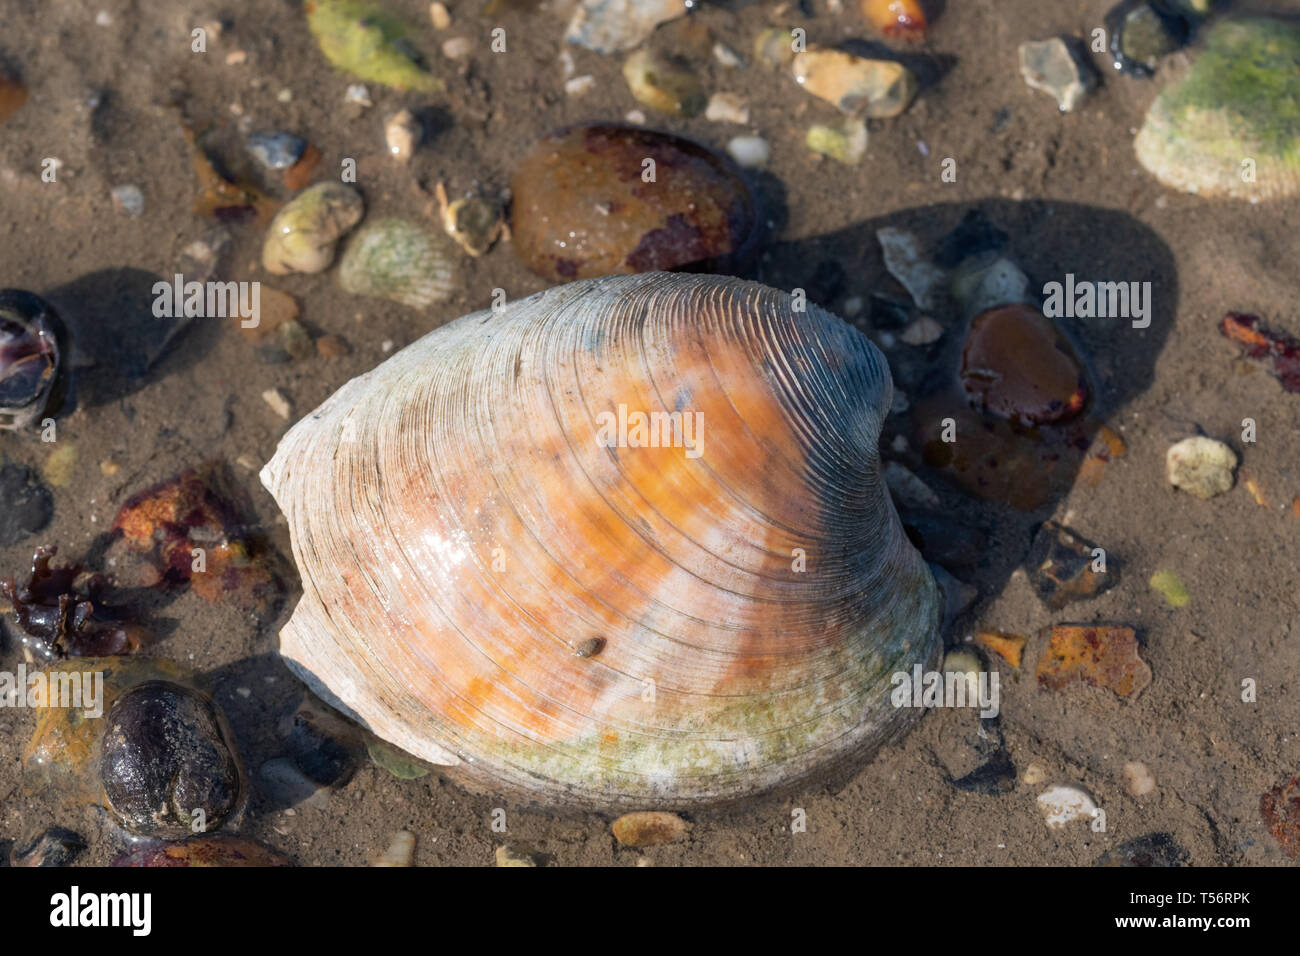 Una vongola, un molluschi bivalvi specie di fauna marina, su una spiaggia del Regno Unito Foto Stock